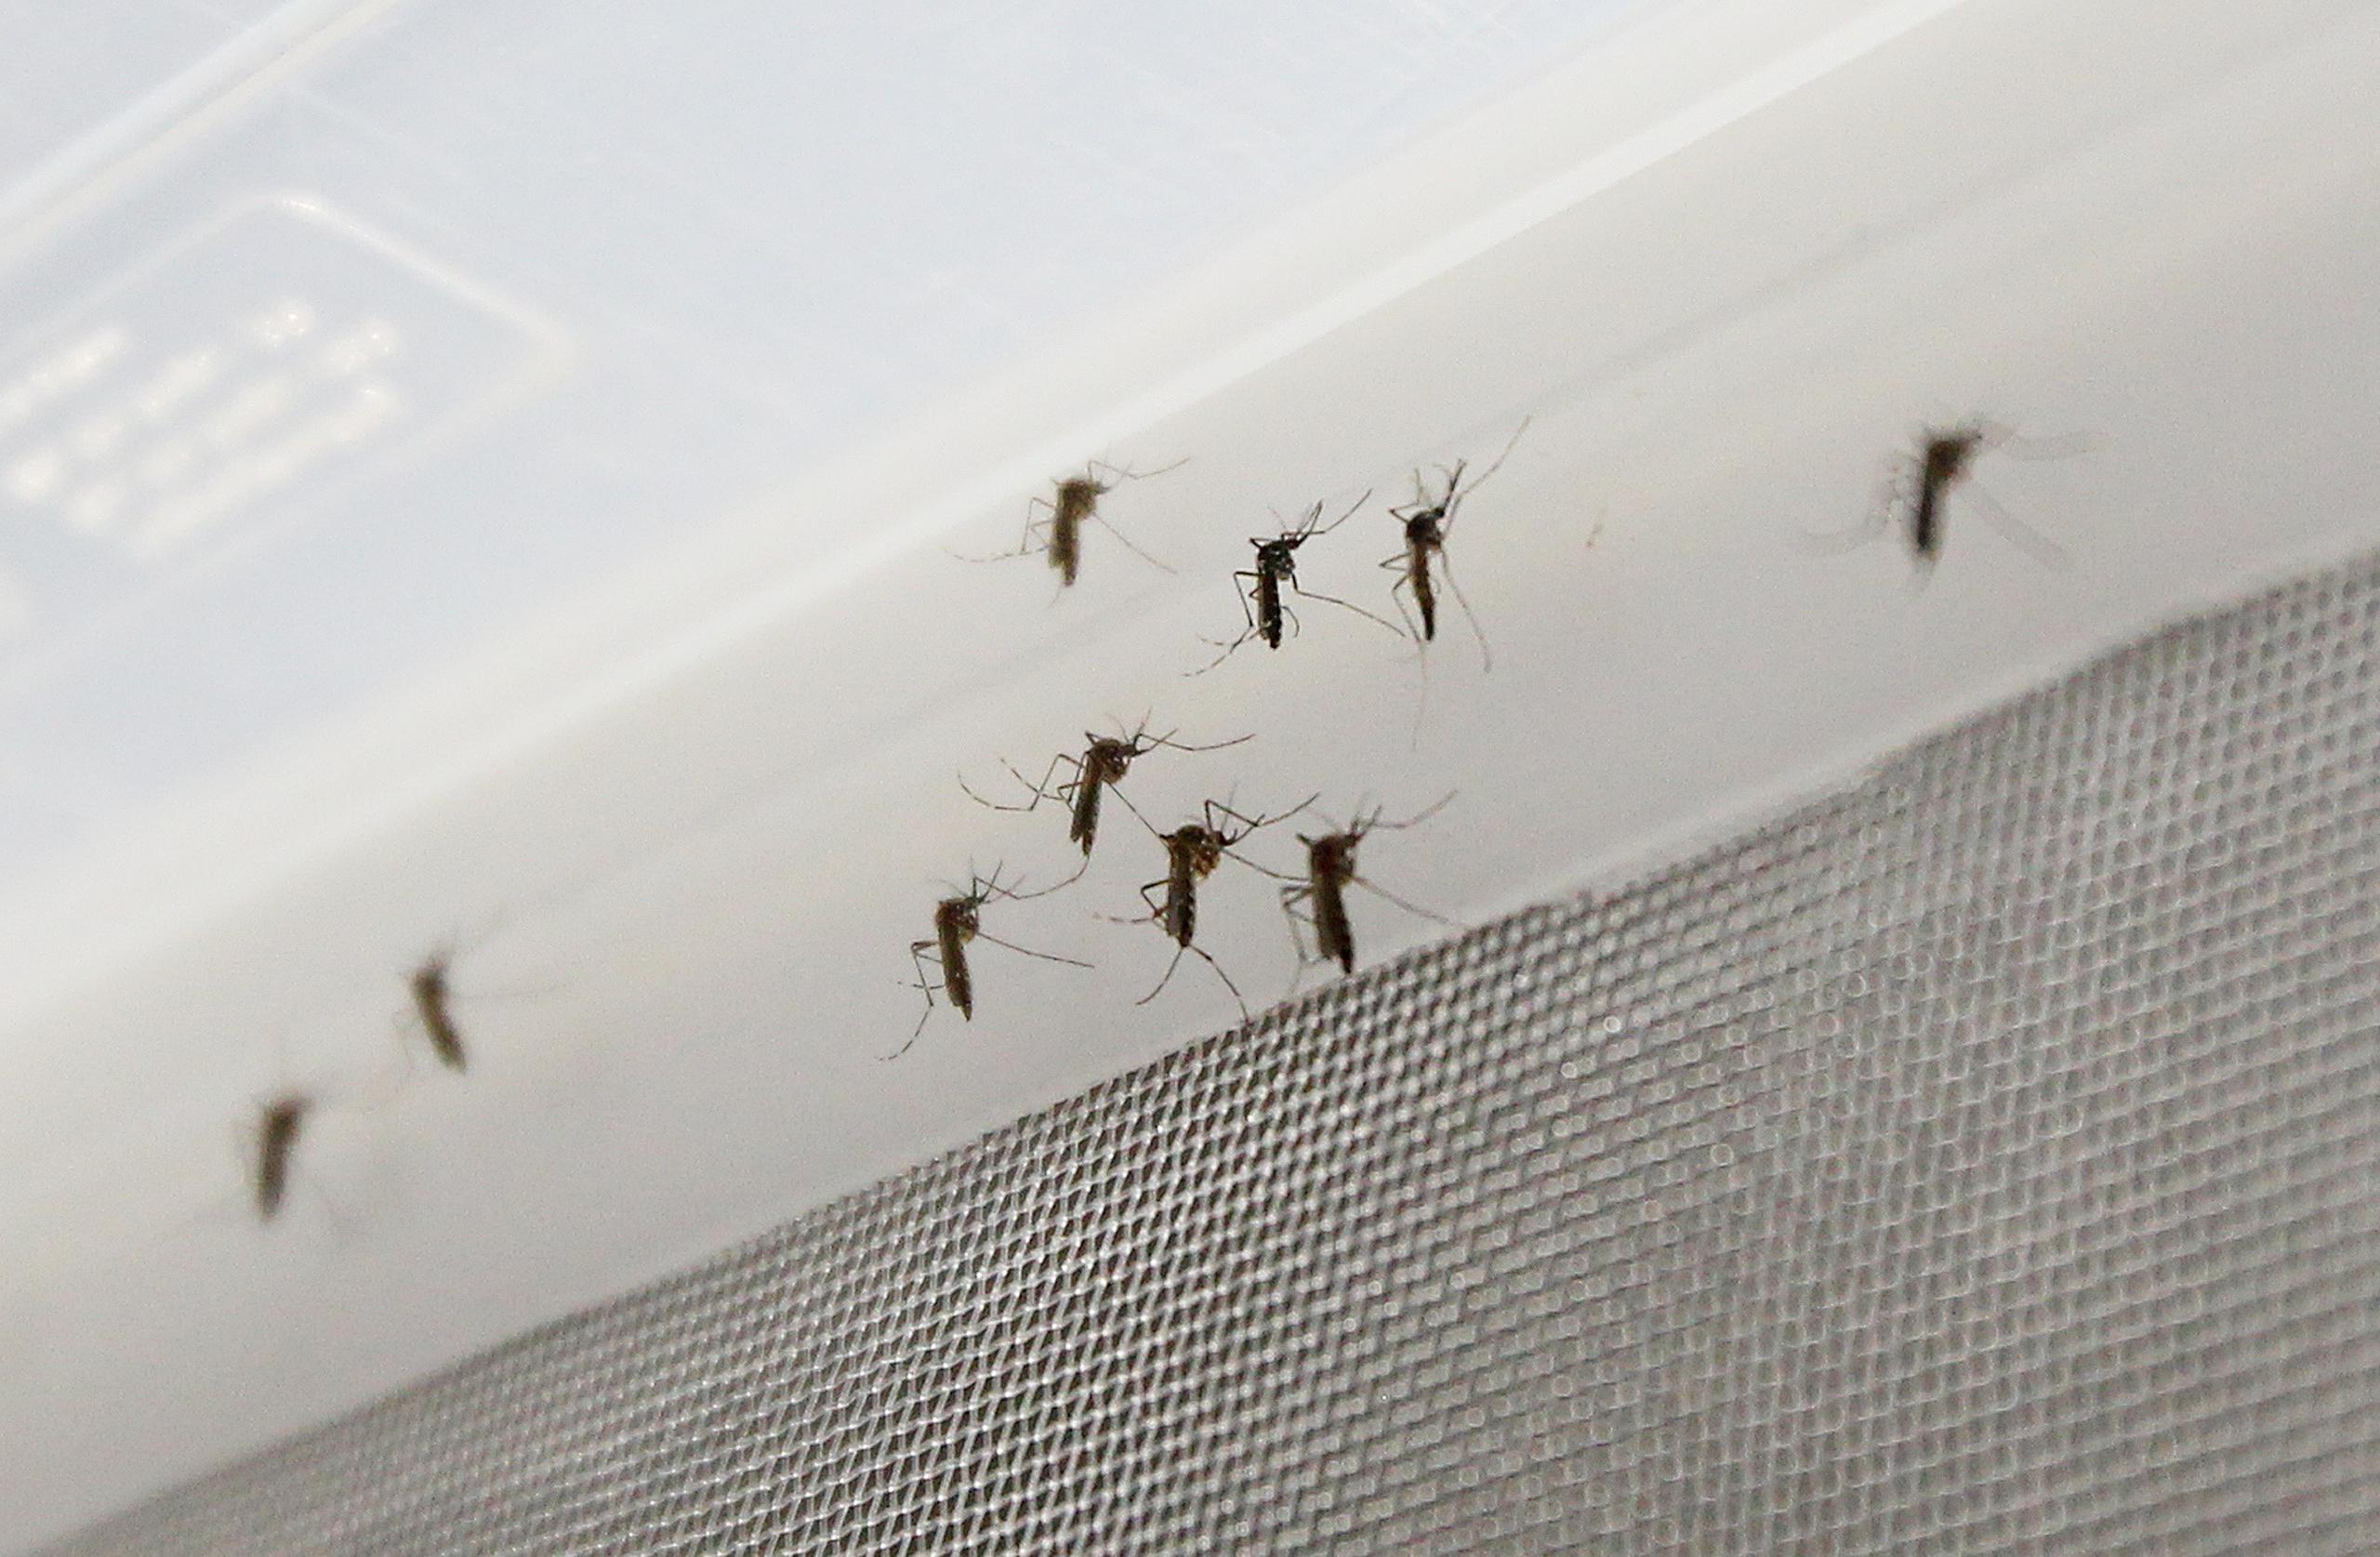 El mosquito Aedes Aegypti es transmisor de dengue, chikunguña y zika.